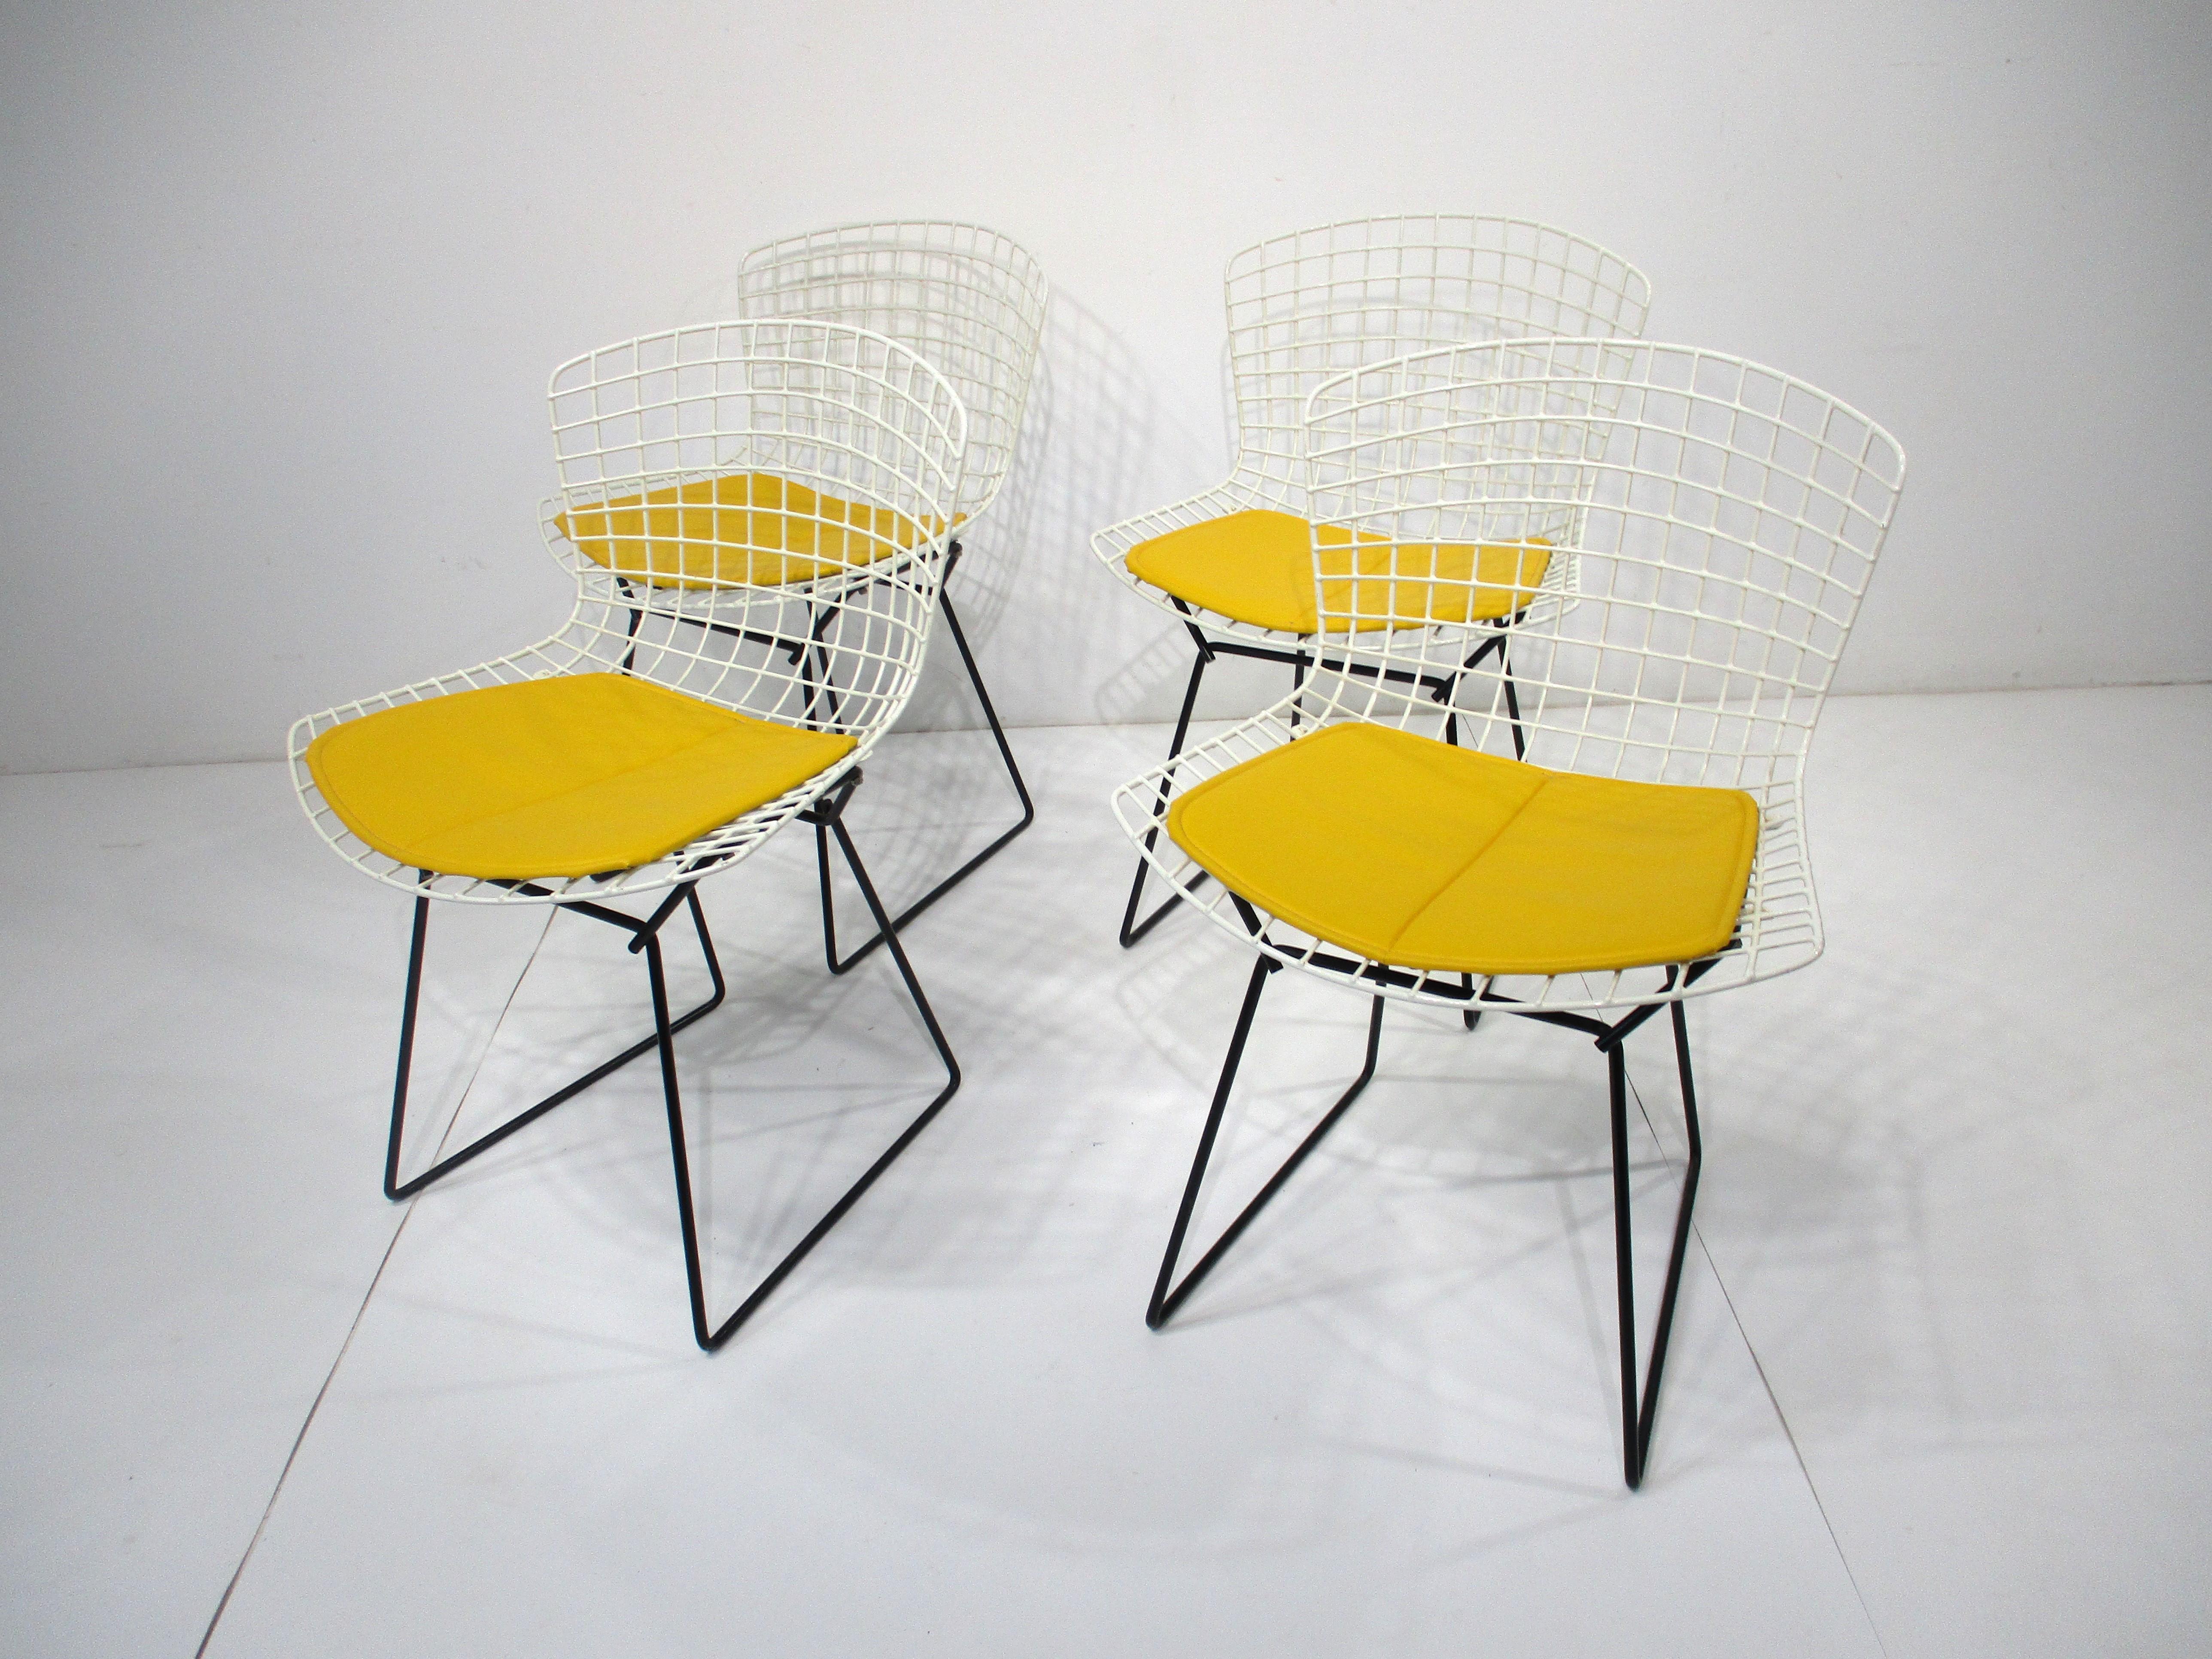 Un ensemble de quatre chaises de salle à manger en fil de fer blanc avec des bases noires et des coussins d'assise rembourrés jaune vif . Une superbe combinaison de commandes spéciales qui donne un aspect joyeux et raffiné, conçue par Harry Bertoia